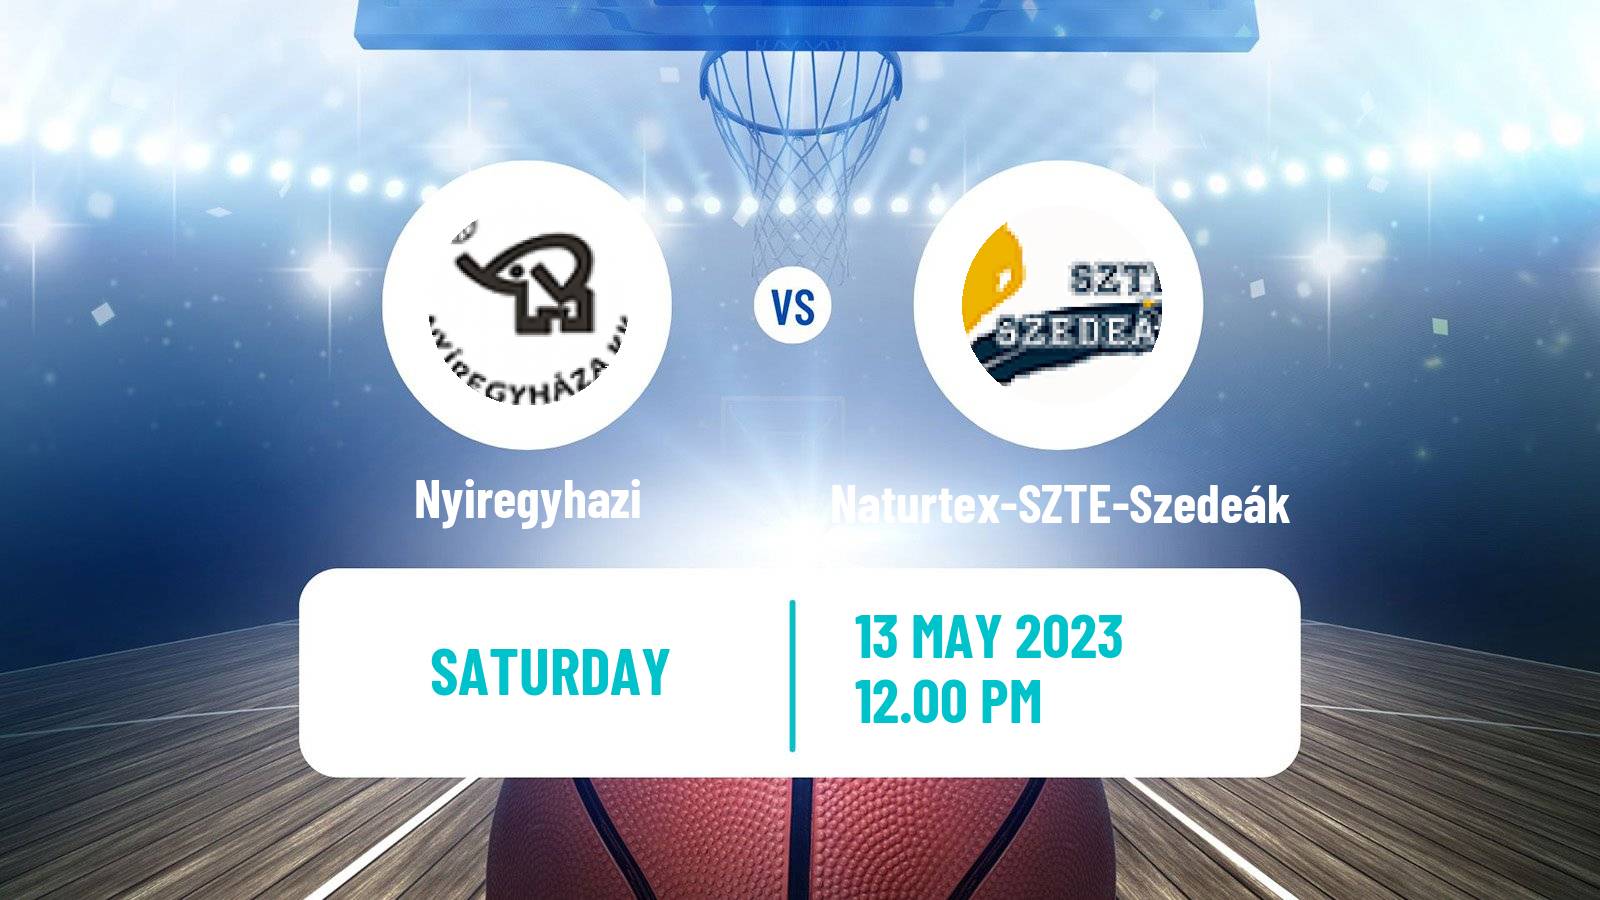 Basketball Hungarian NB I Basketball Nyiregyhazi - Naturtex-SZTE-Szedeák